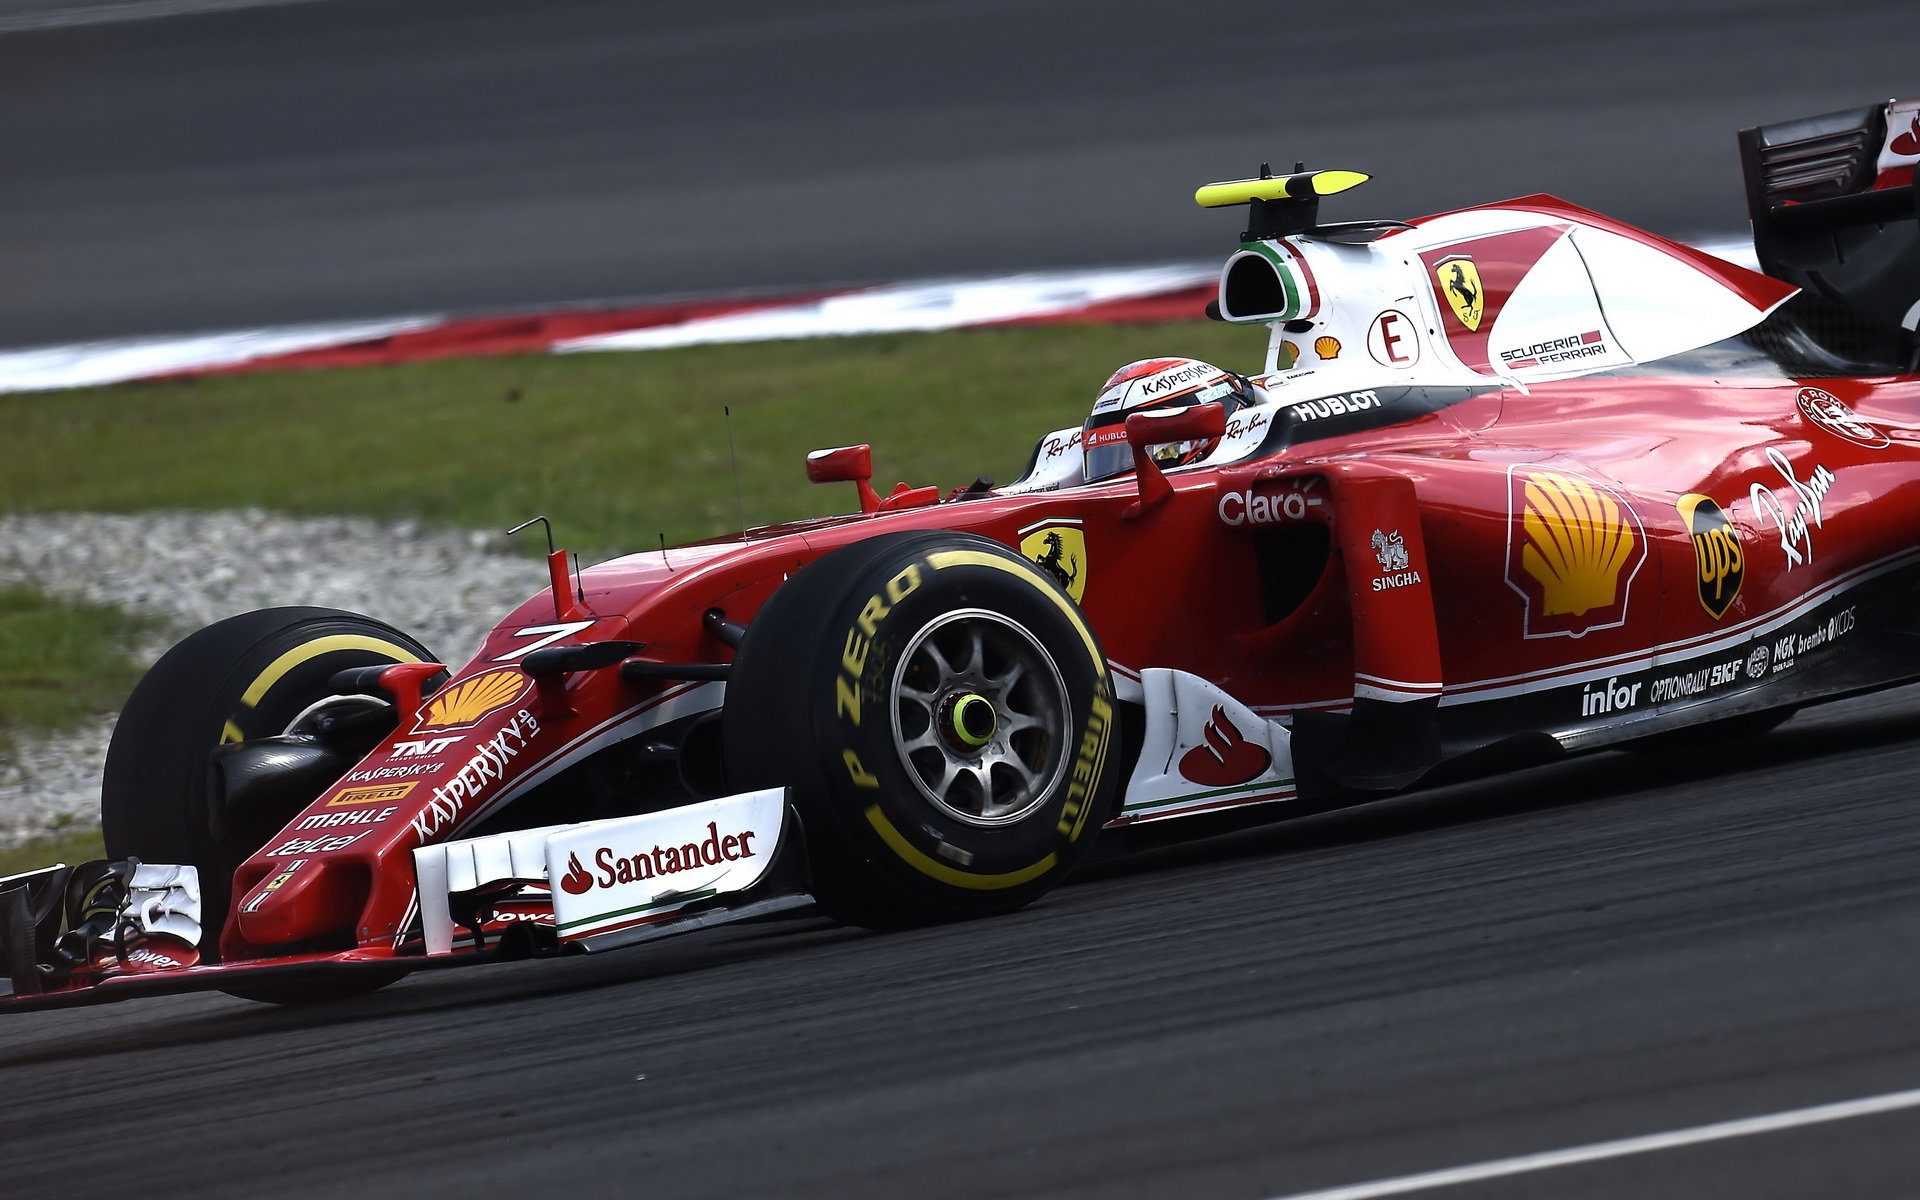 Kimi Räikkönen v Malajsii po kolizi s Mercedesem hodně ztrácel